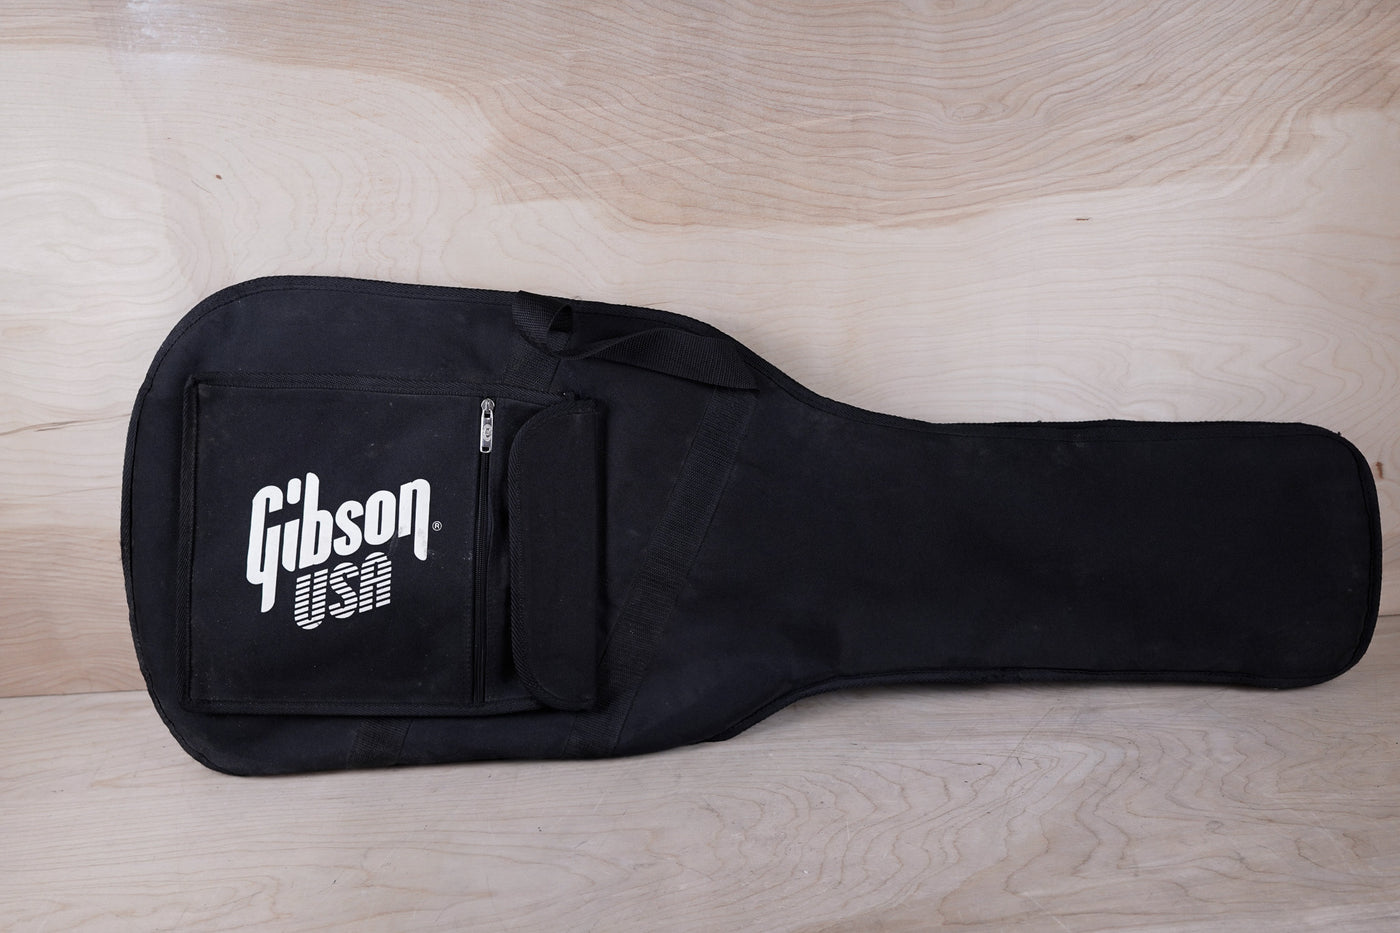 Gibson S Series Firebird Zero 2017 Pelham Blue w/ Bag